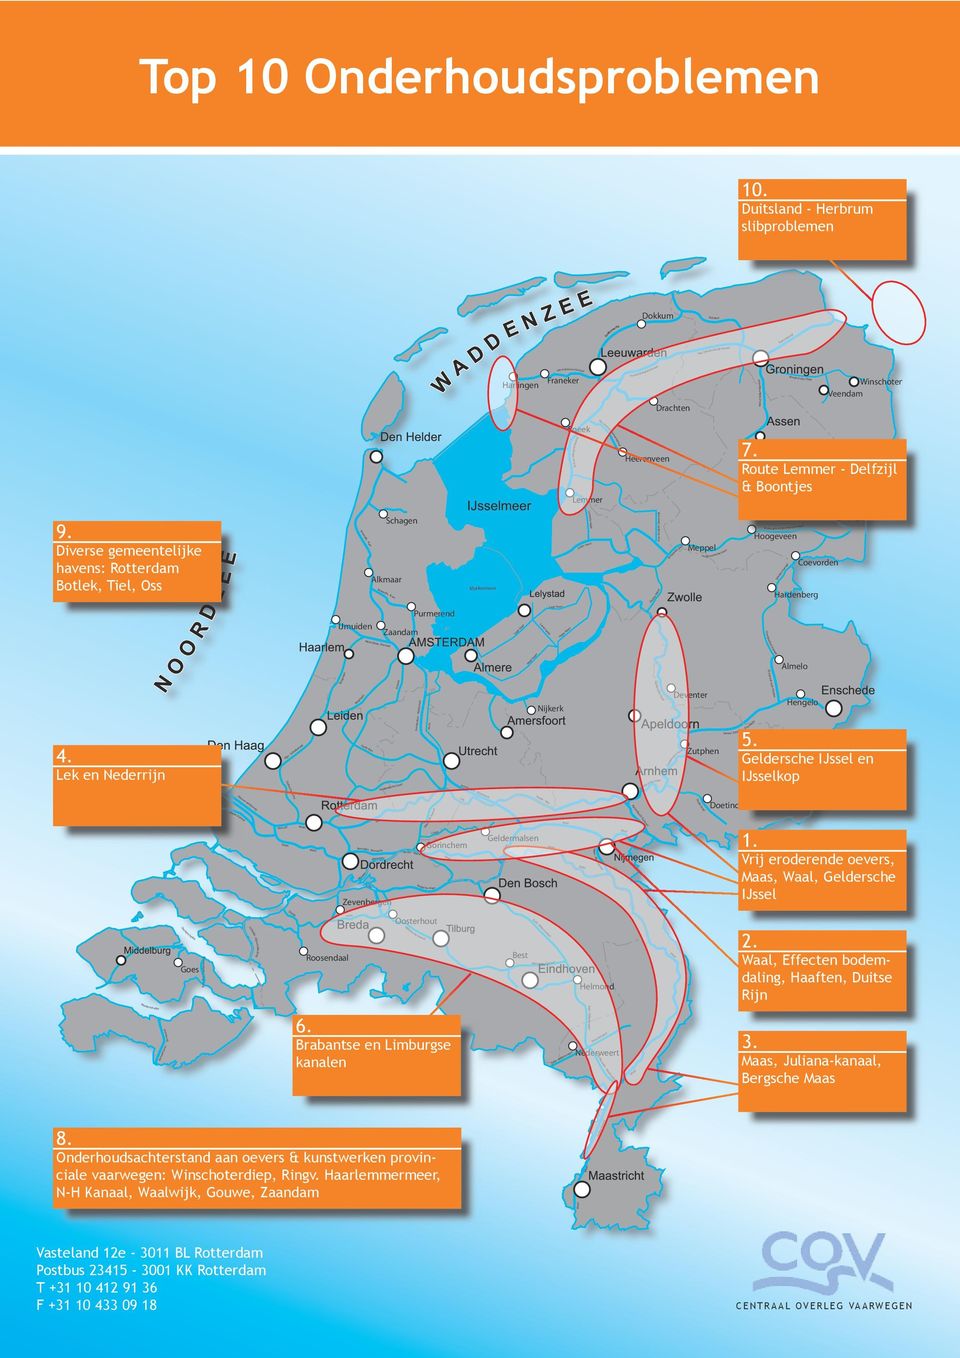 Veendam Sneek Nw. Heerenveense kanaal Heerenveen Lemmer 7. Route Lemmer - Delfzijl & Boontjes 9.